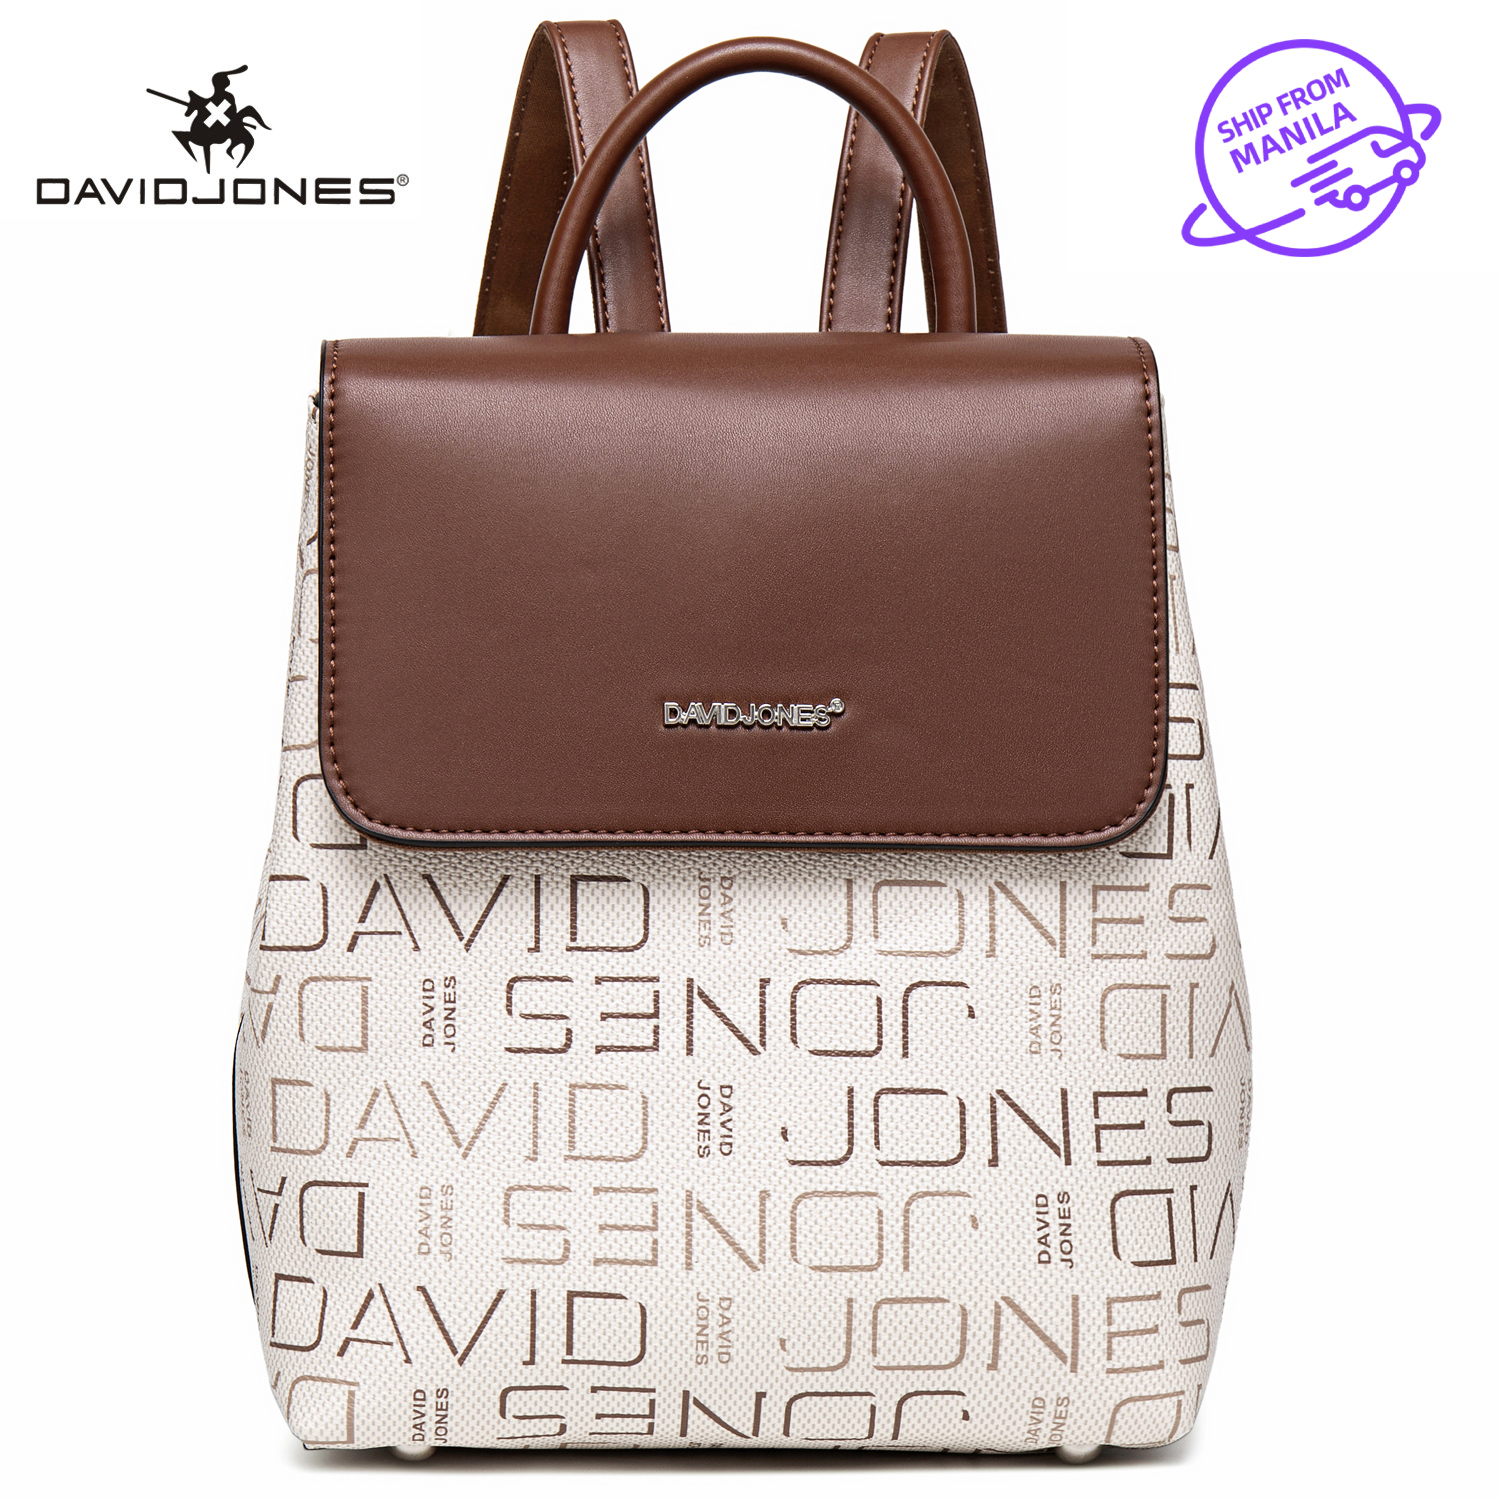 Buy David Jones DAVIDJONES Women's Top Handle Shoulder Hobo Handbags Tote  Purse at Amazon.in